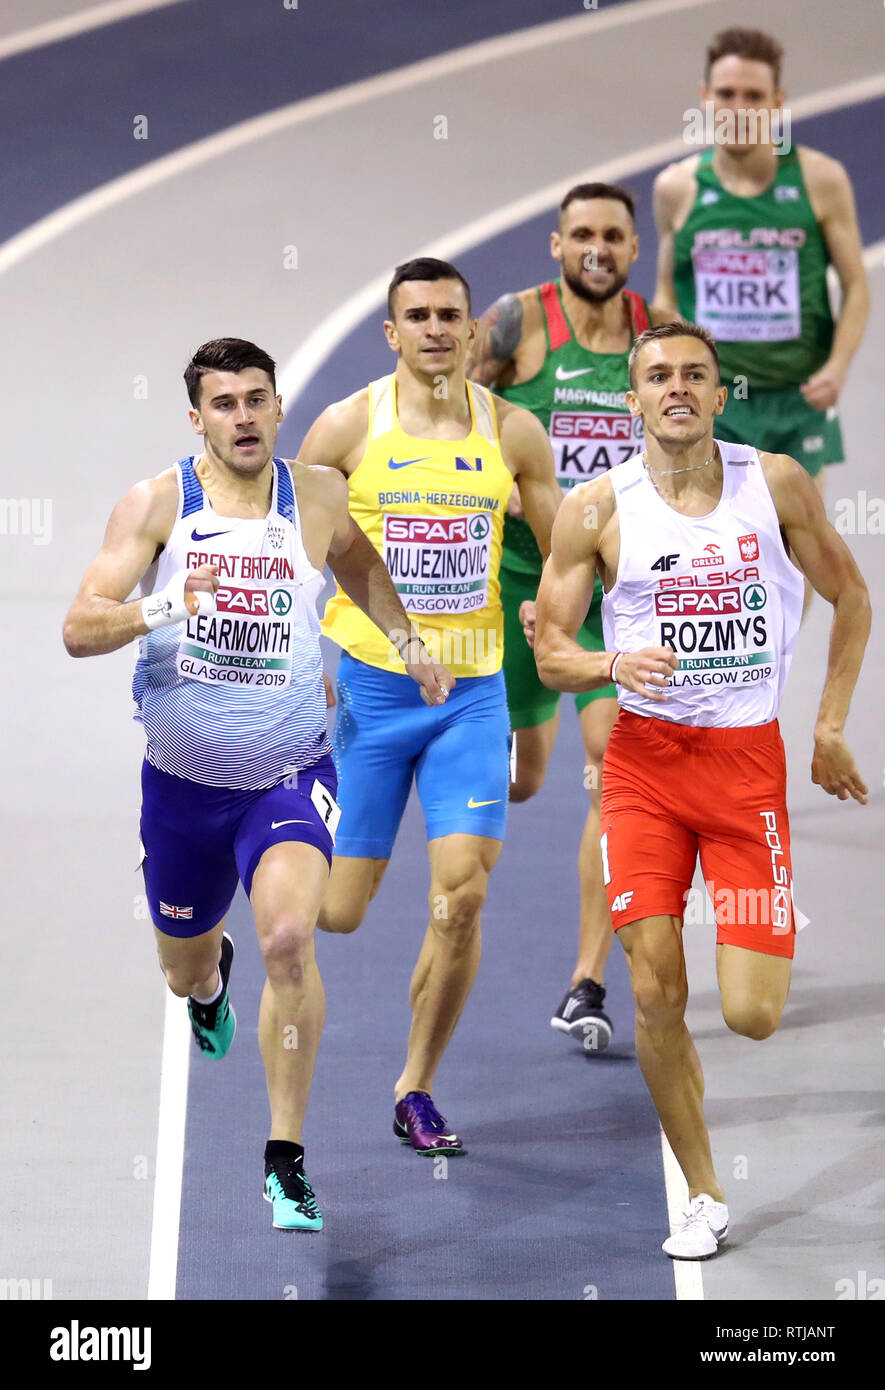 Gran Bretagna Guy Learmont (sinistra) in 800m Uomini 2 di calore durante il giorno uno degli Europei Indoor di Atletica a Emirates Arena, Glasgow. Foto Stock